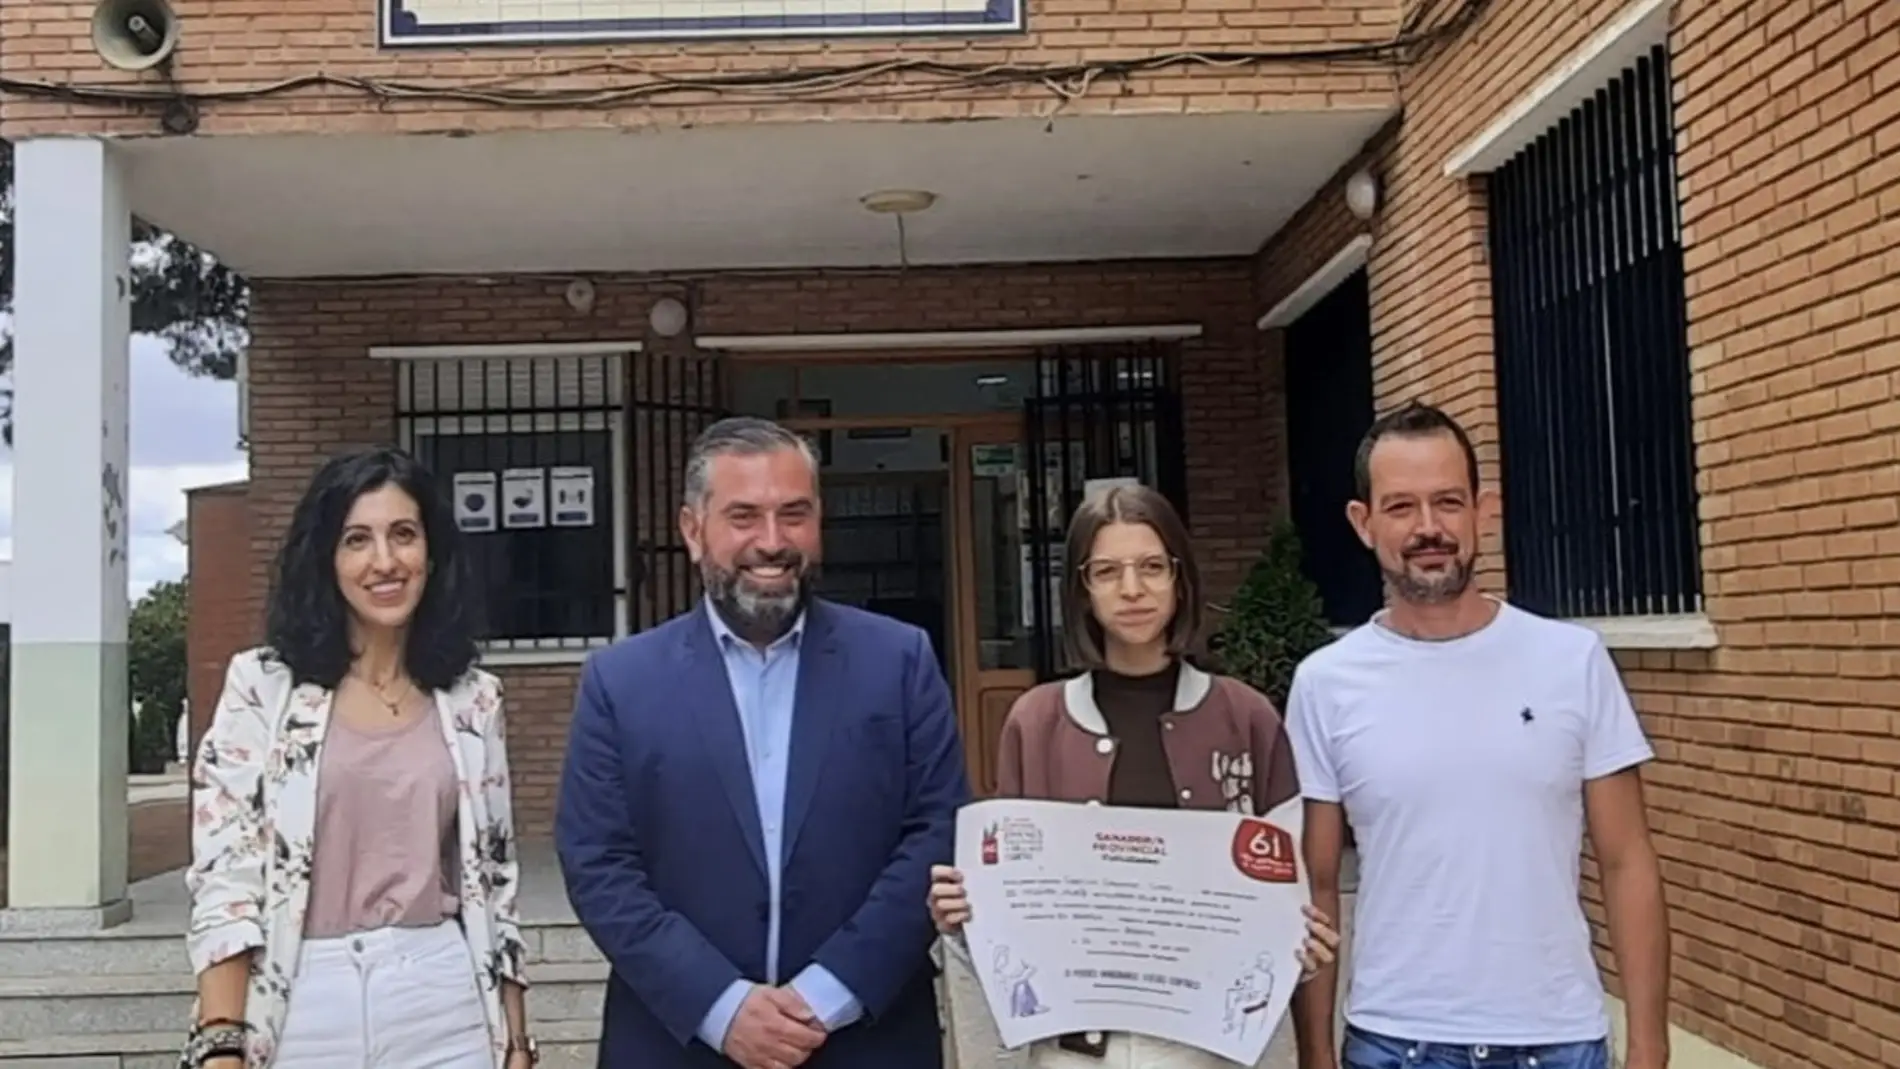 Cristina Cardizales del IES Meléndez Valdés, ganadora de la 61 edición del relato corto de Coca Cola en la Provincia de Badajoz